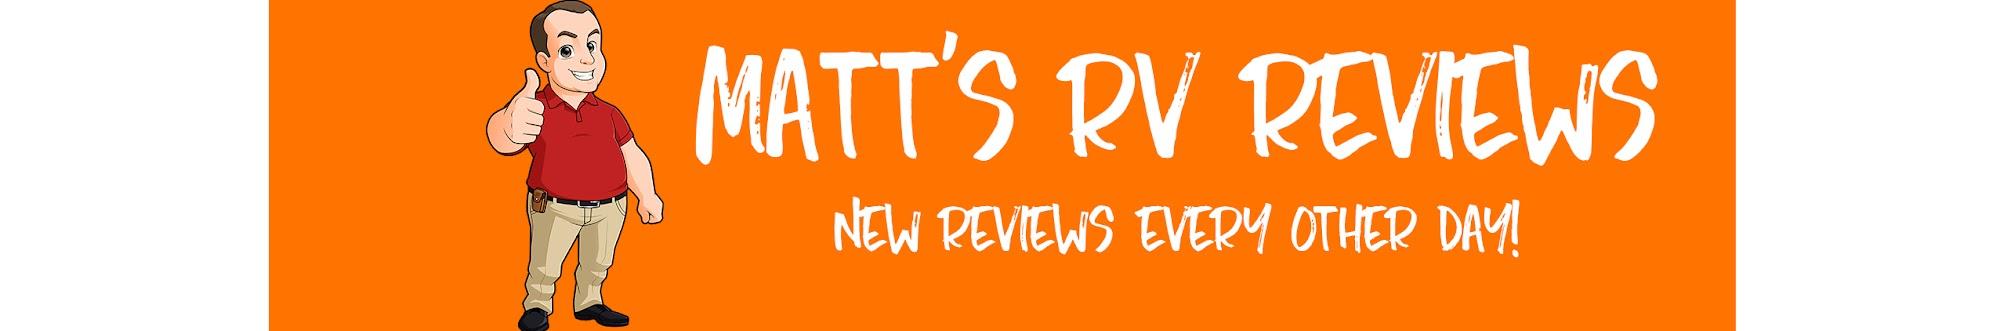 Matt's RV Reviews